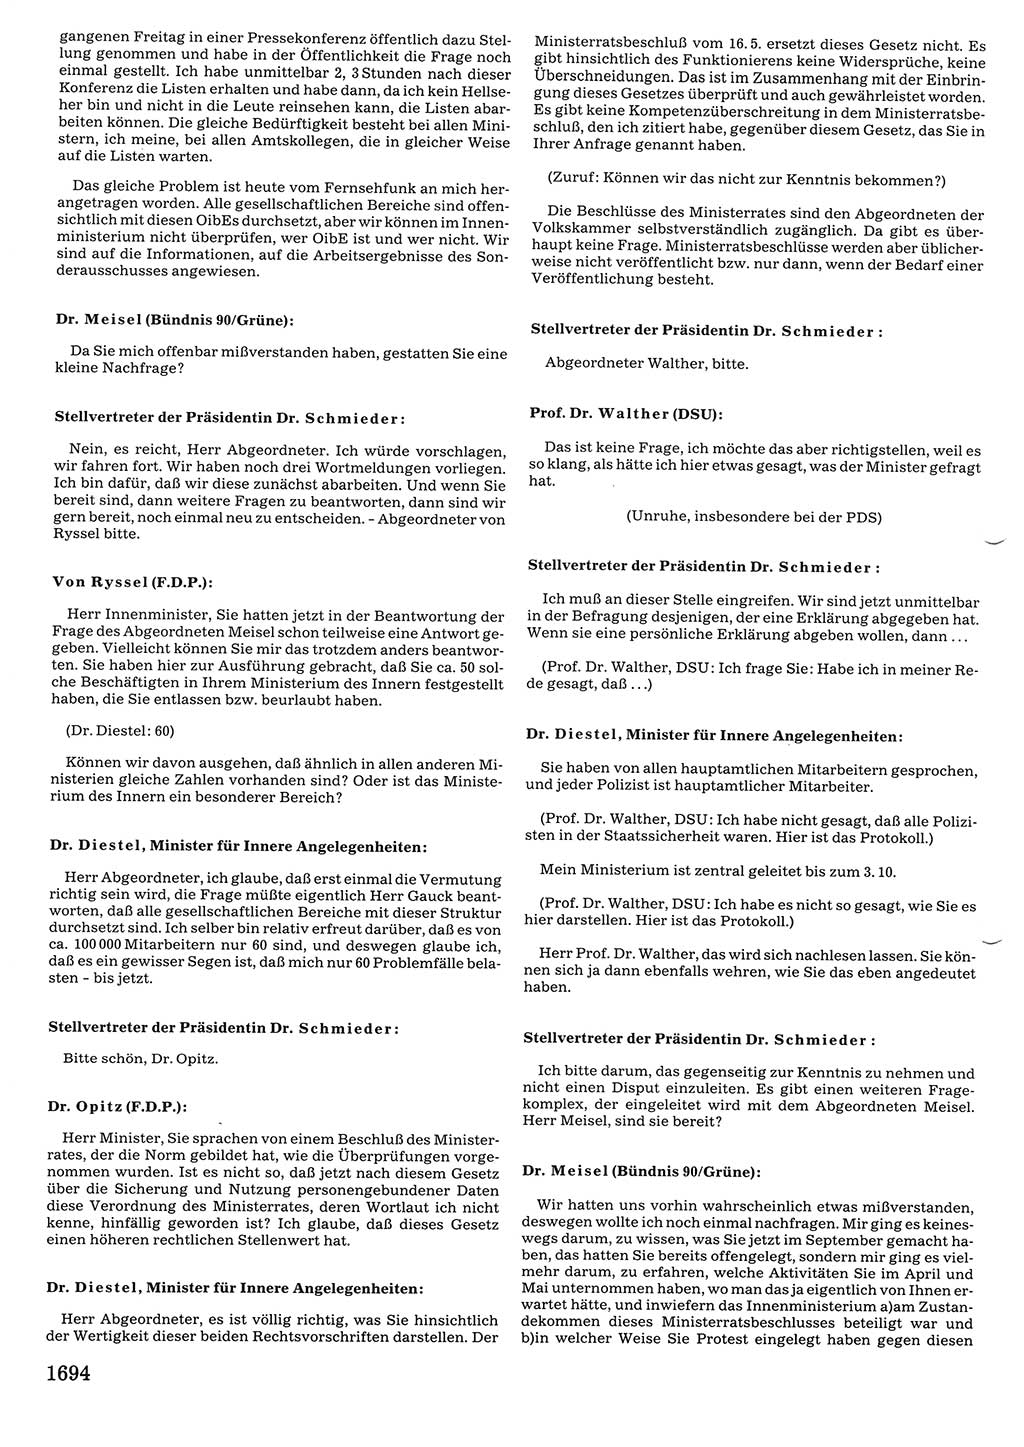 Tagungen der Volkskammer (VK) der Deutschen Demokratischen Republik (DDR), 10. Wahlperiode 1990, Seite 1694 (VK. DDR 10. WP. 1990, Prot. Tg. 1-38, 5.4.-2.10.1990, S. 1694)